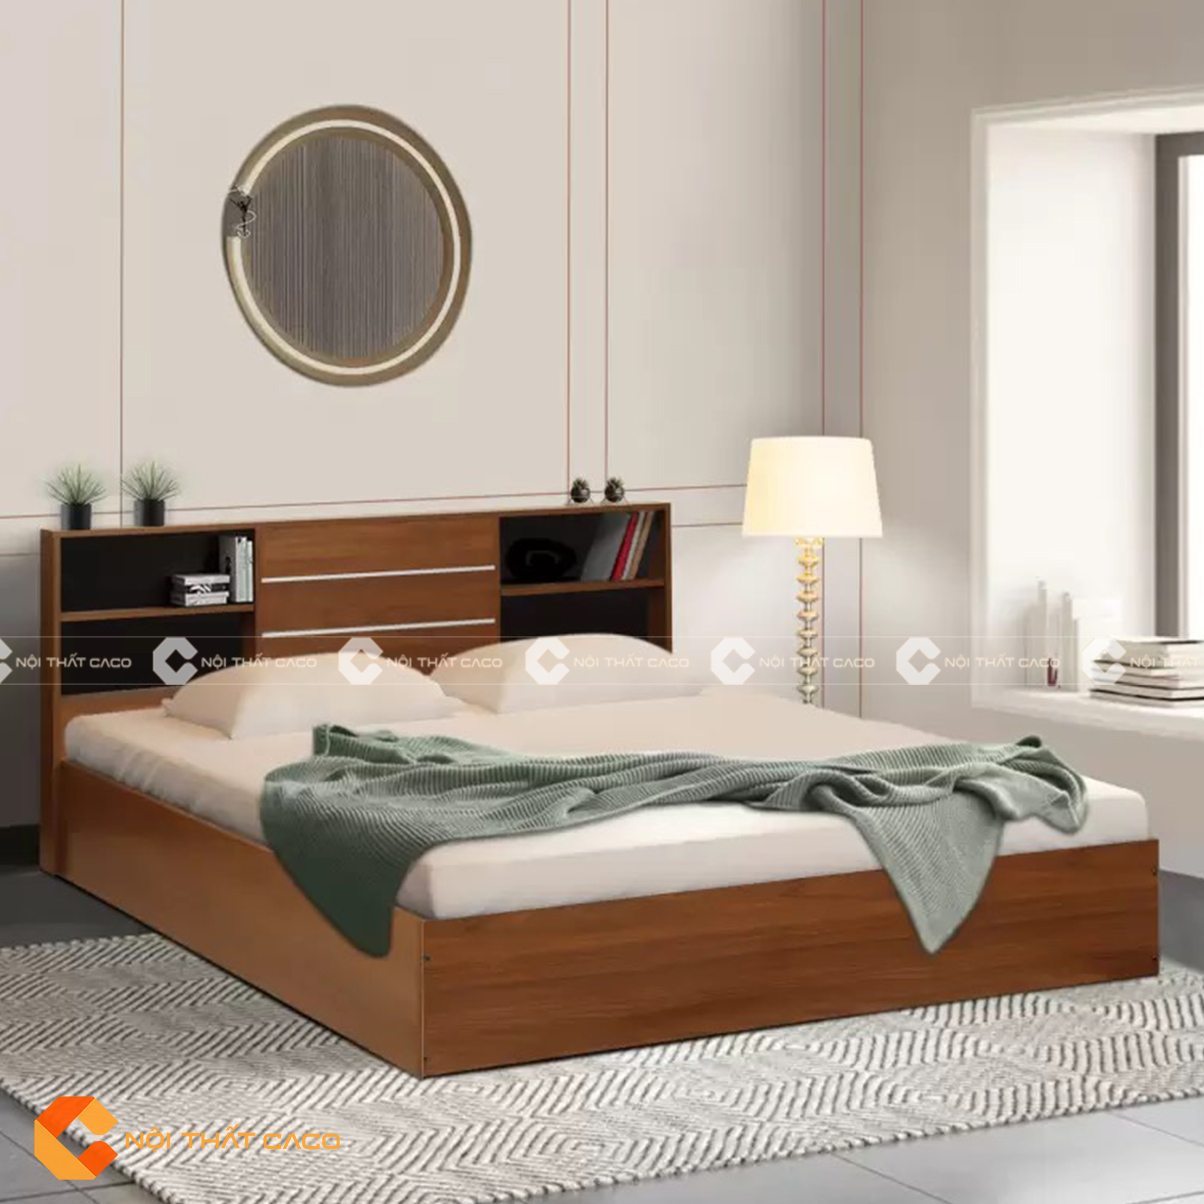 Giường ngủ gỗ công nghiệp hiện đại ấn tượng